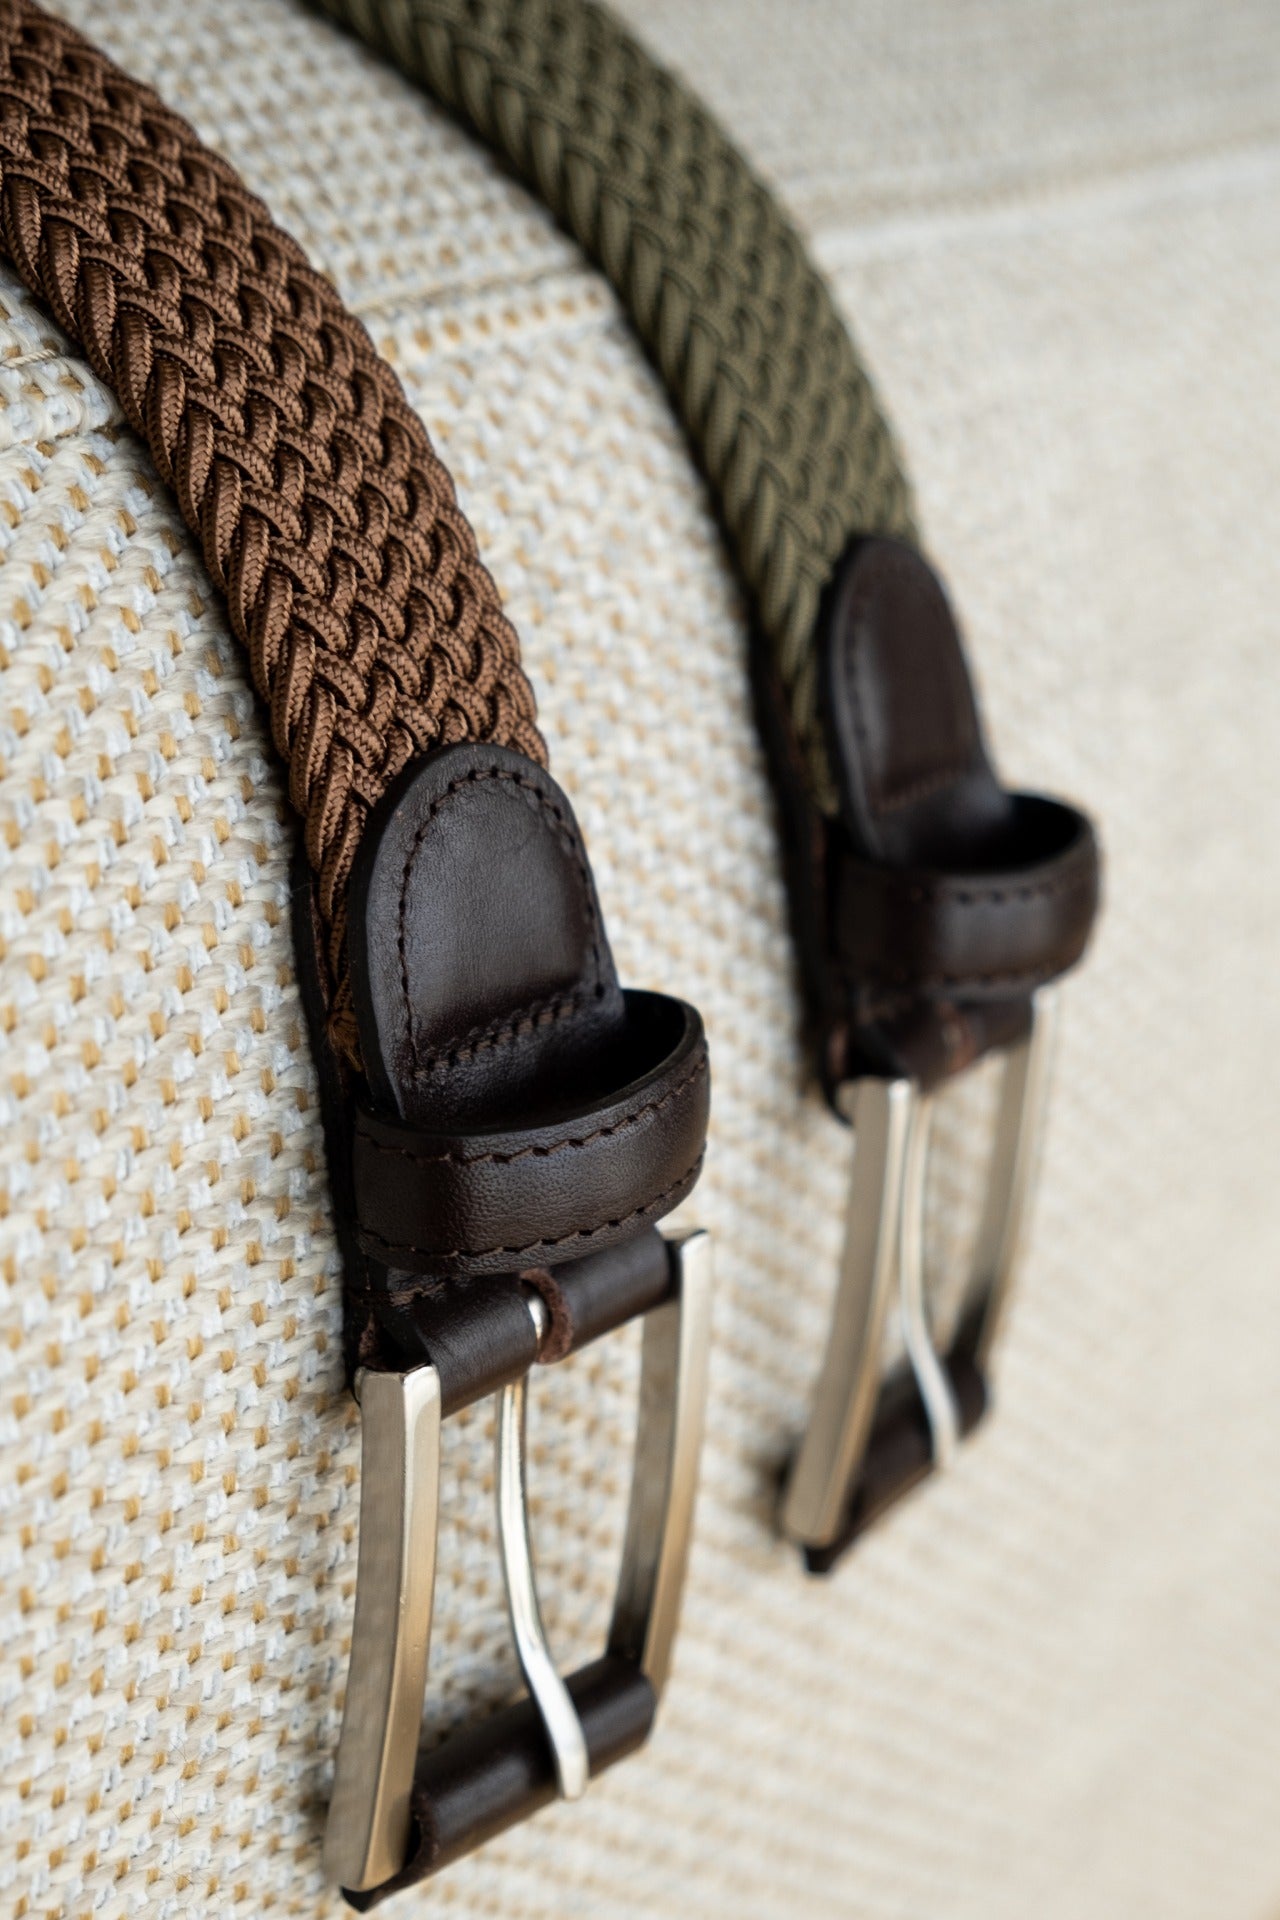 Cinturón de cuero hecho a mano con cuero sueco de alta calidad. La